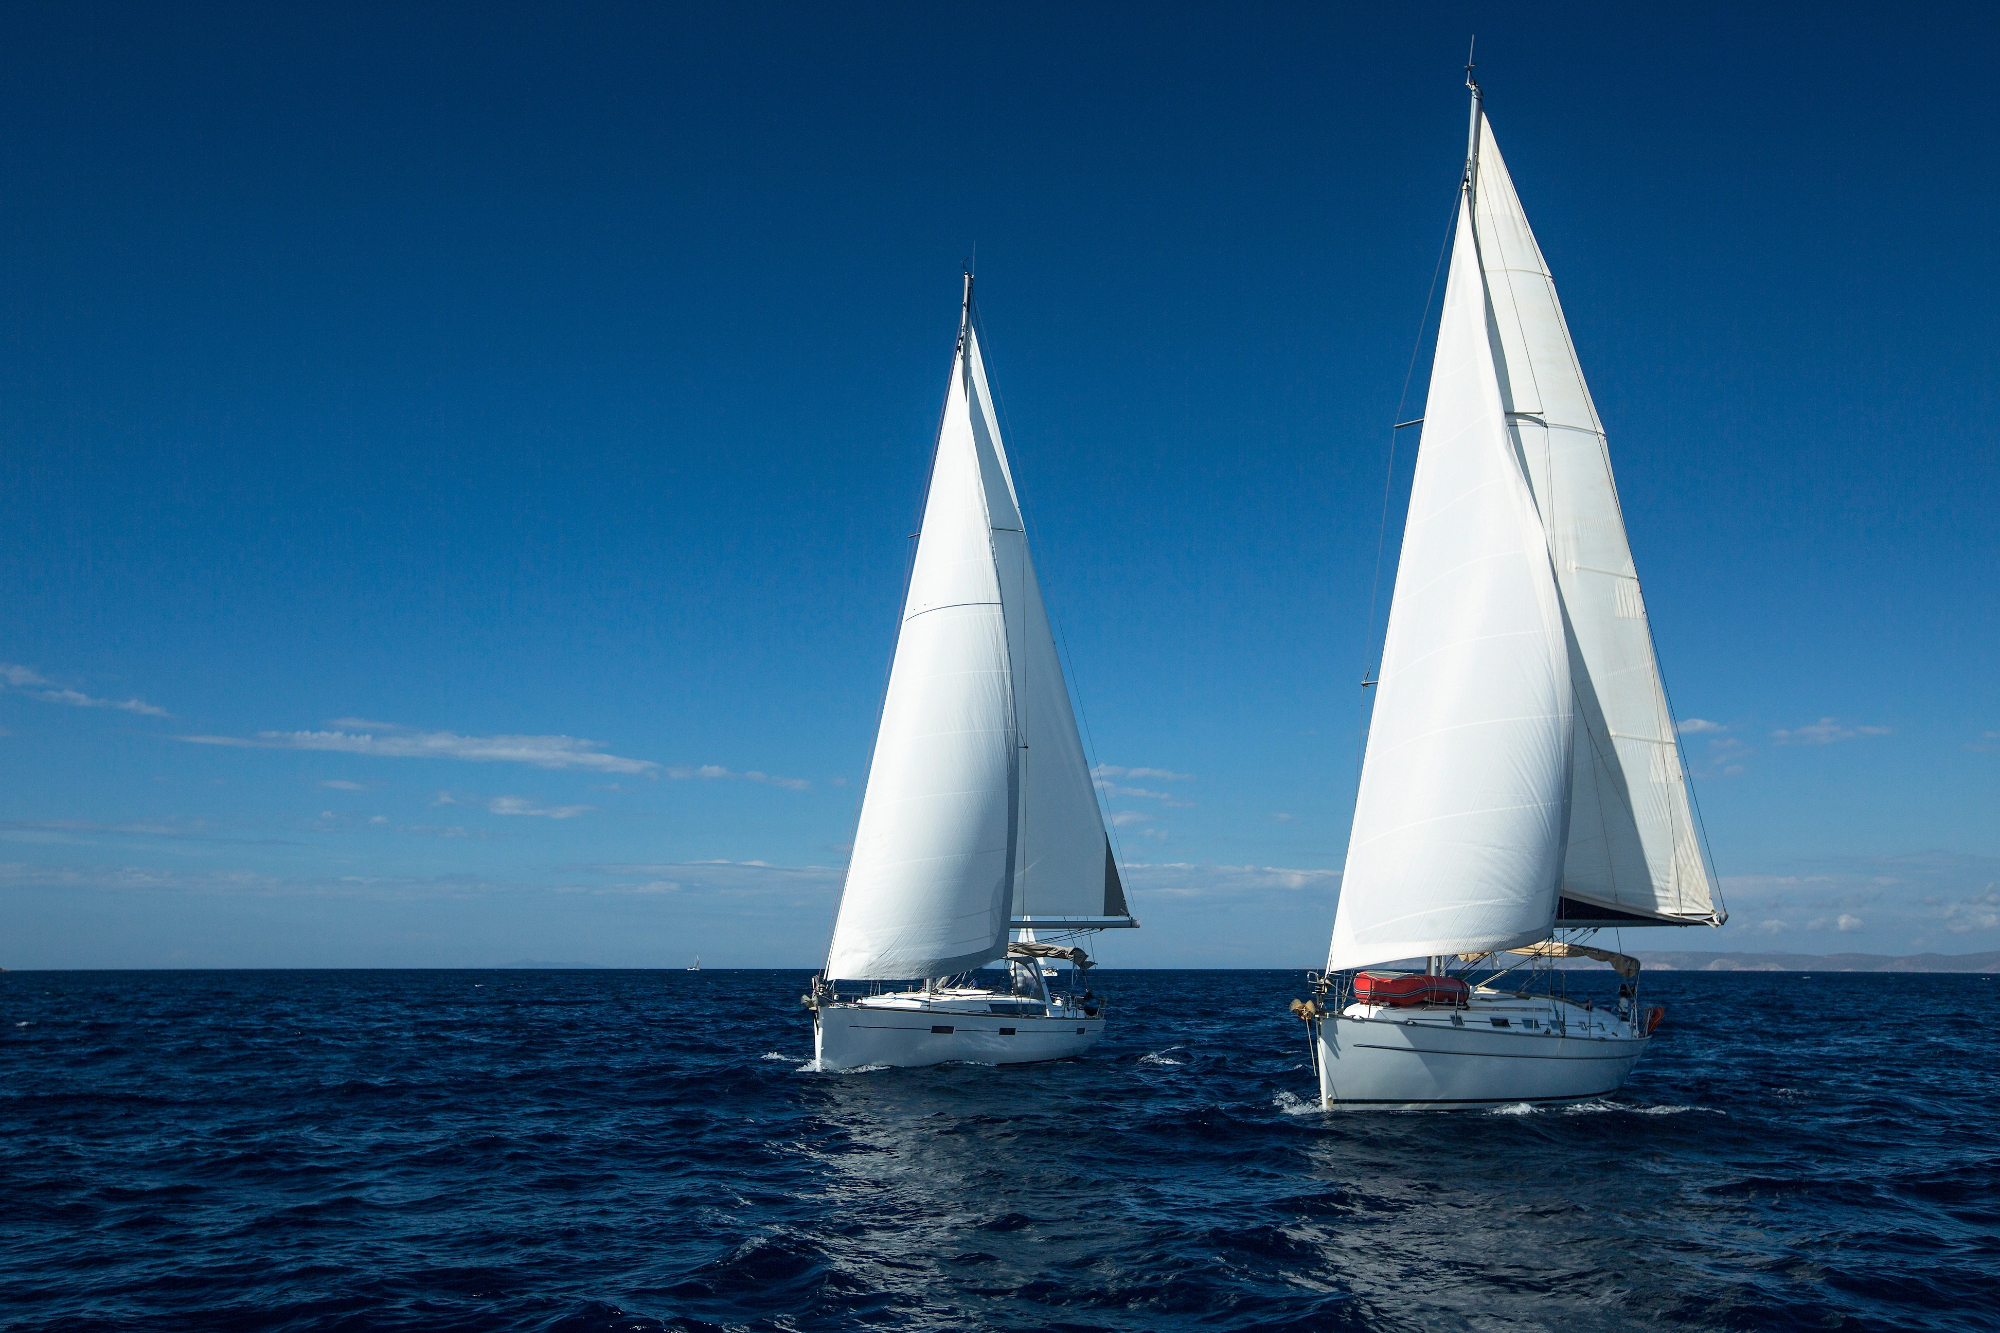 Pantaloni vela sono essenziali per navigare con comfort e sicurezza